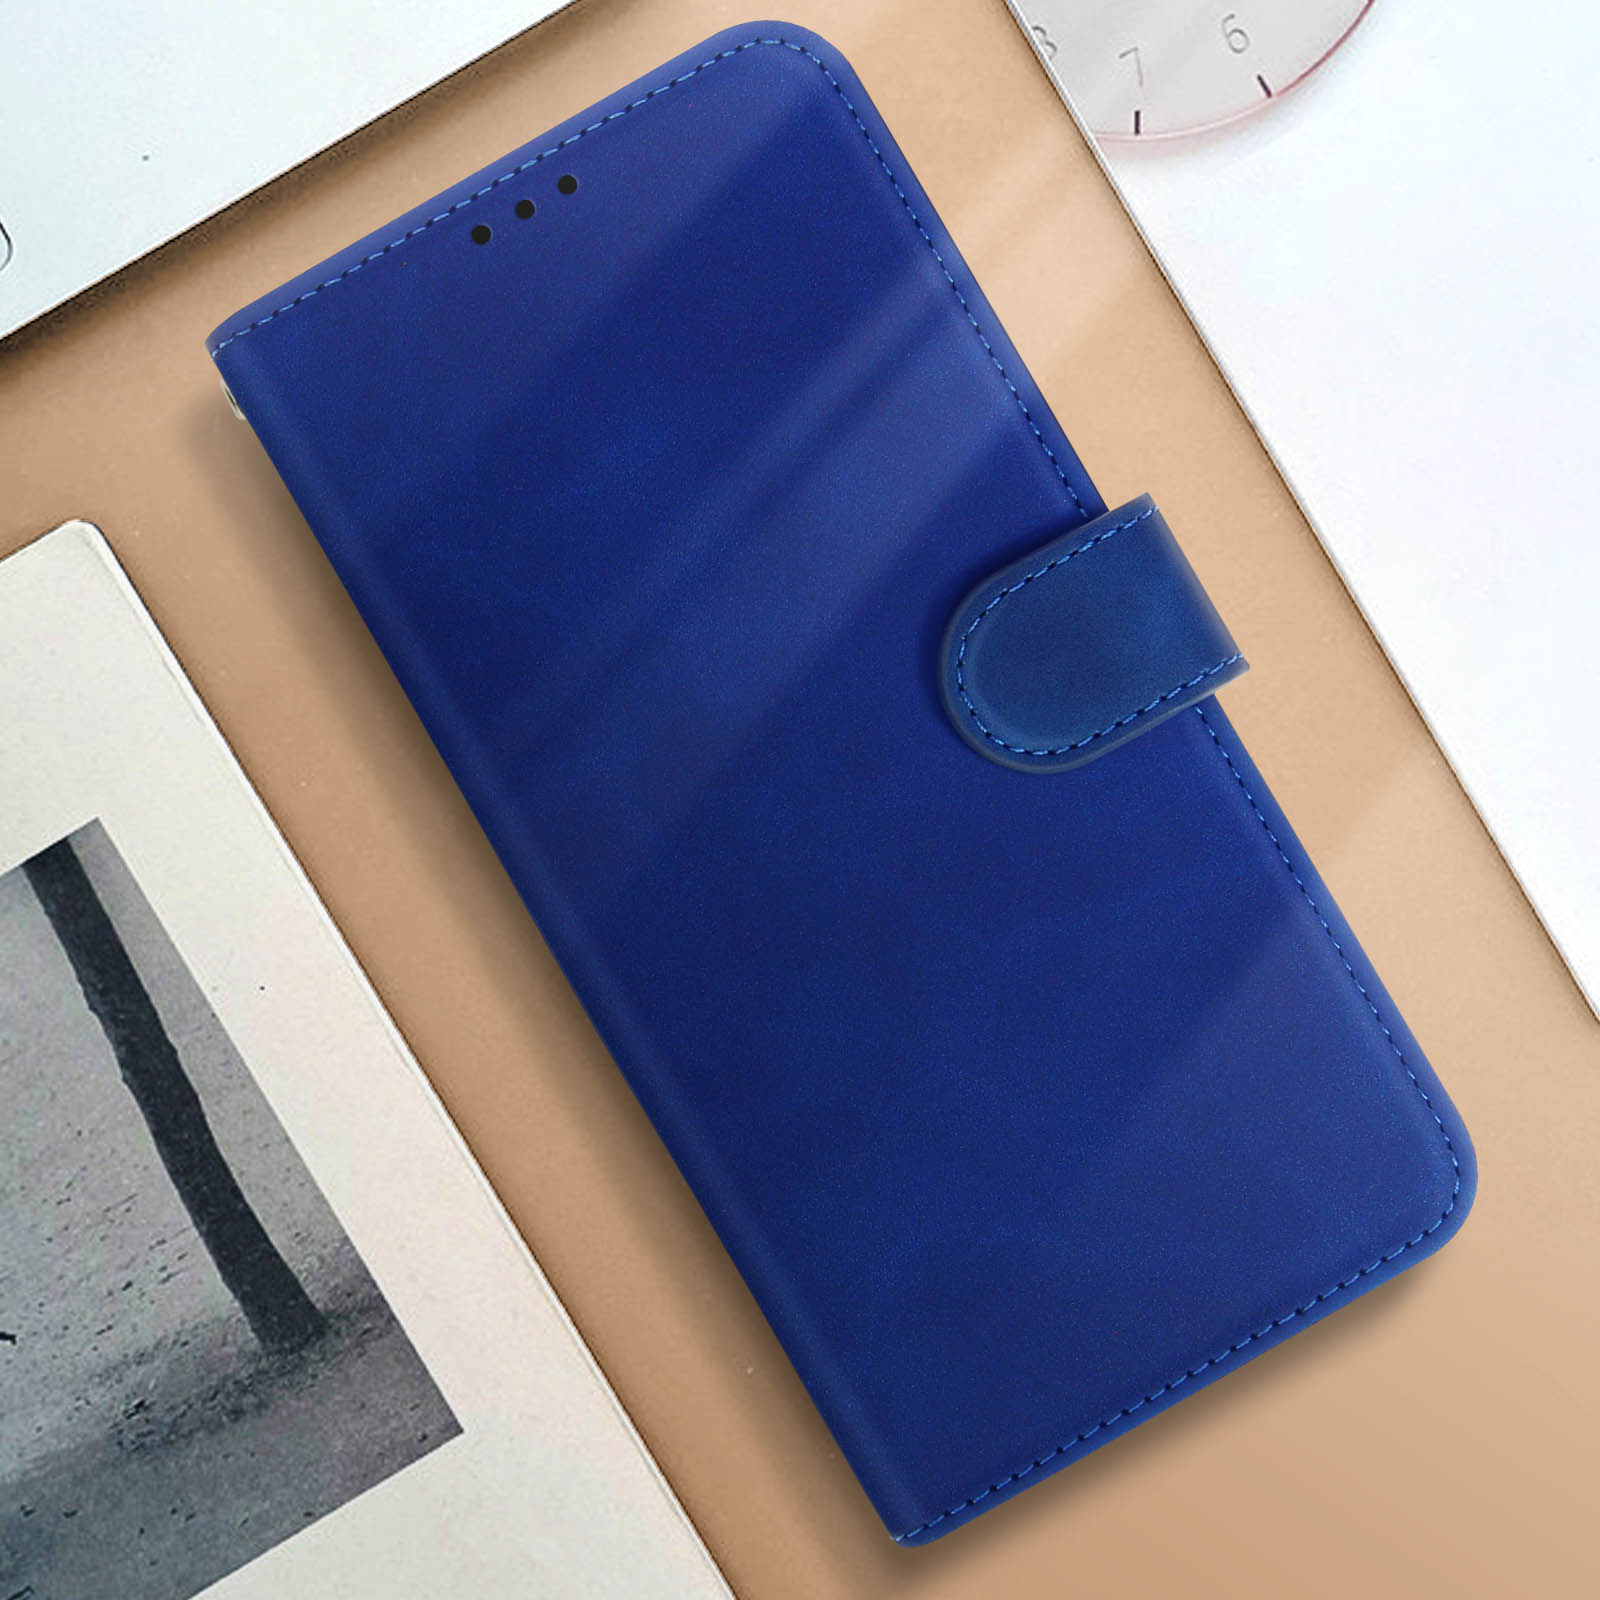 5G, Nokia Bookcover, Sleek Blau AVIZAR G42 Series, Nokia, Cover